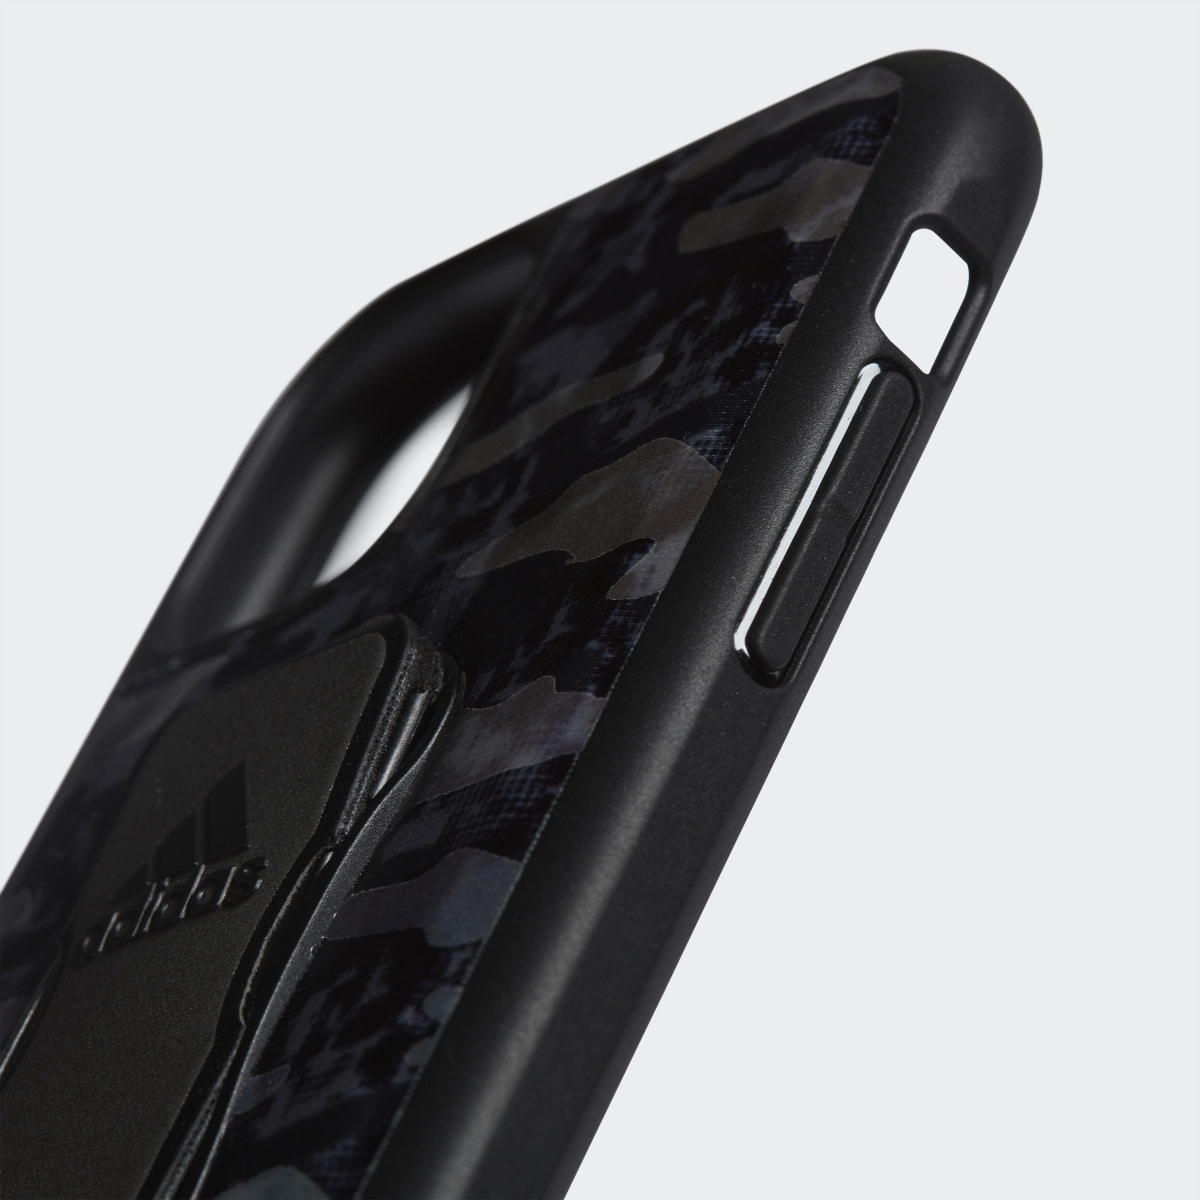 Adidas Grip Case iPhone 11. 5